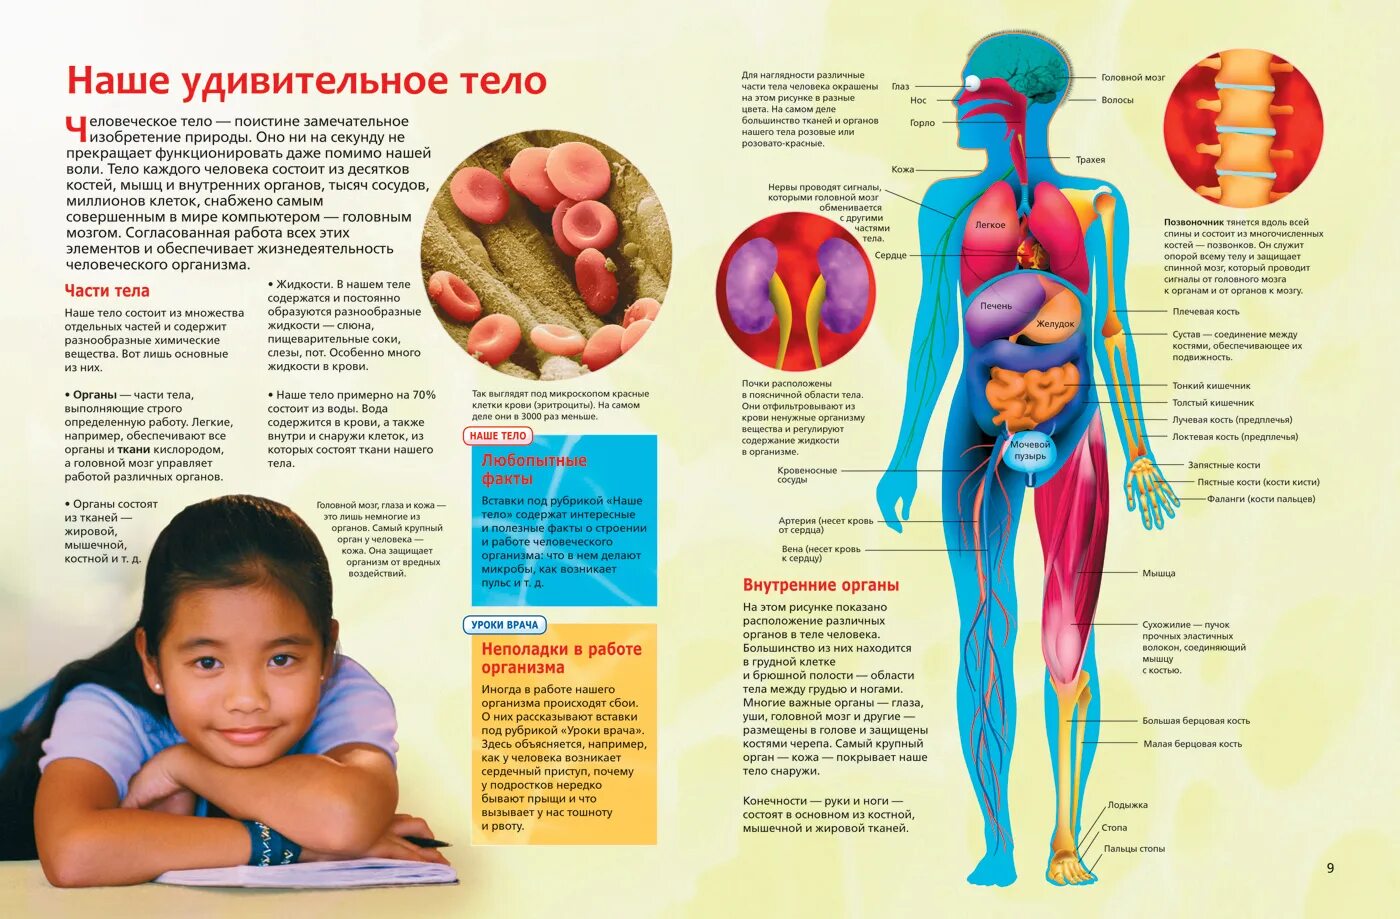 Знать строение человека. Интересные сведения о человеческом теле. Анатомия человека. Интересные факты об органах человека. Анатомия человека для детей.